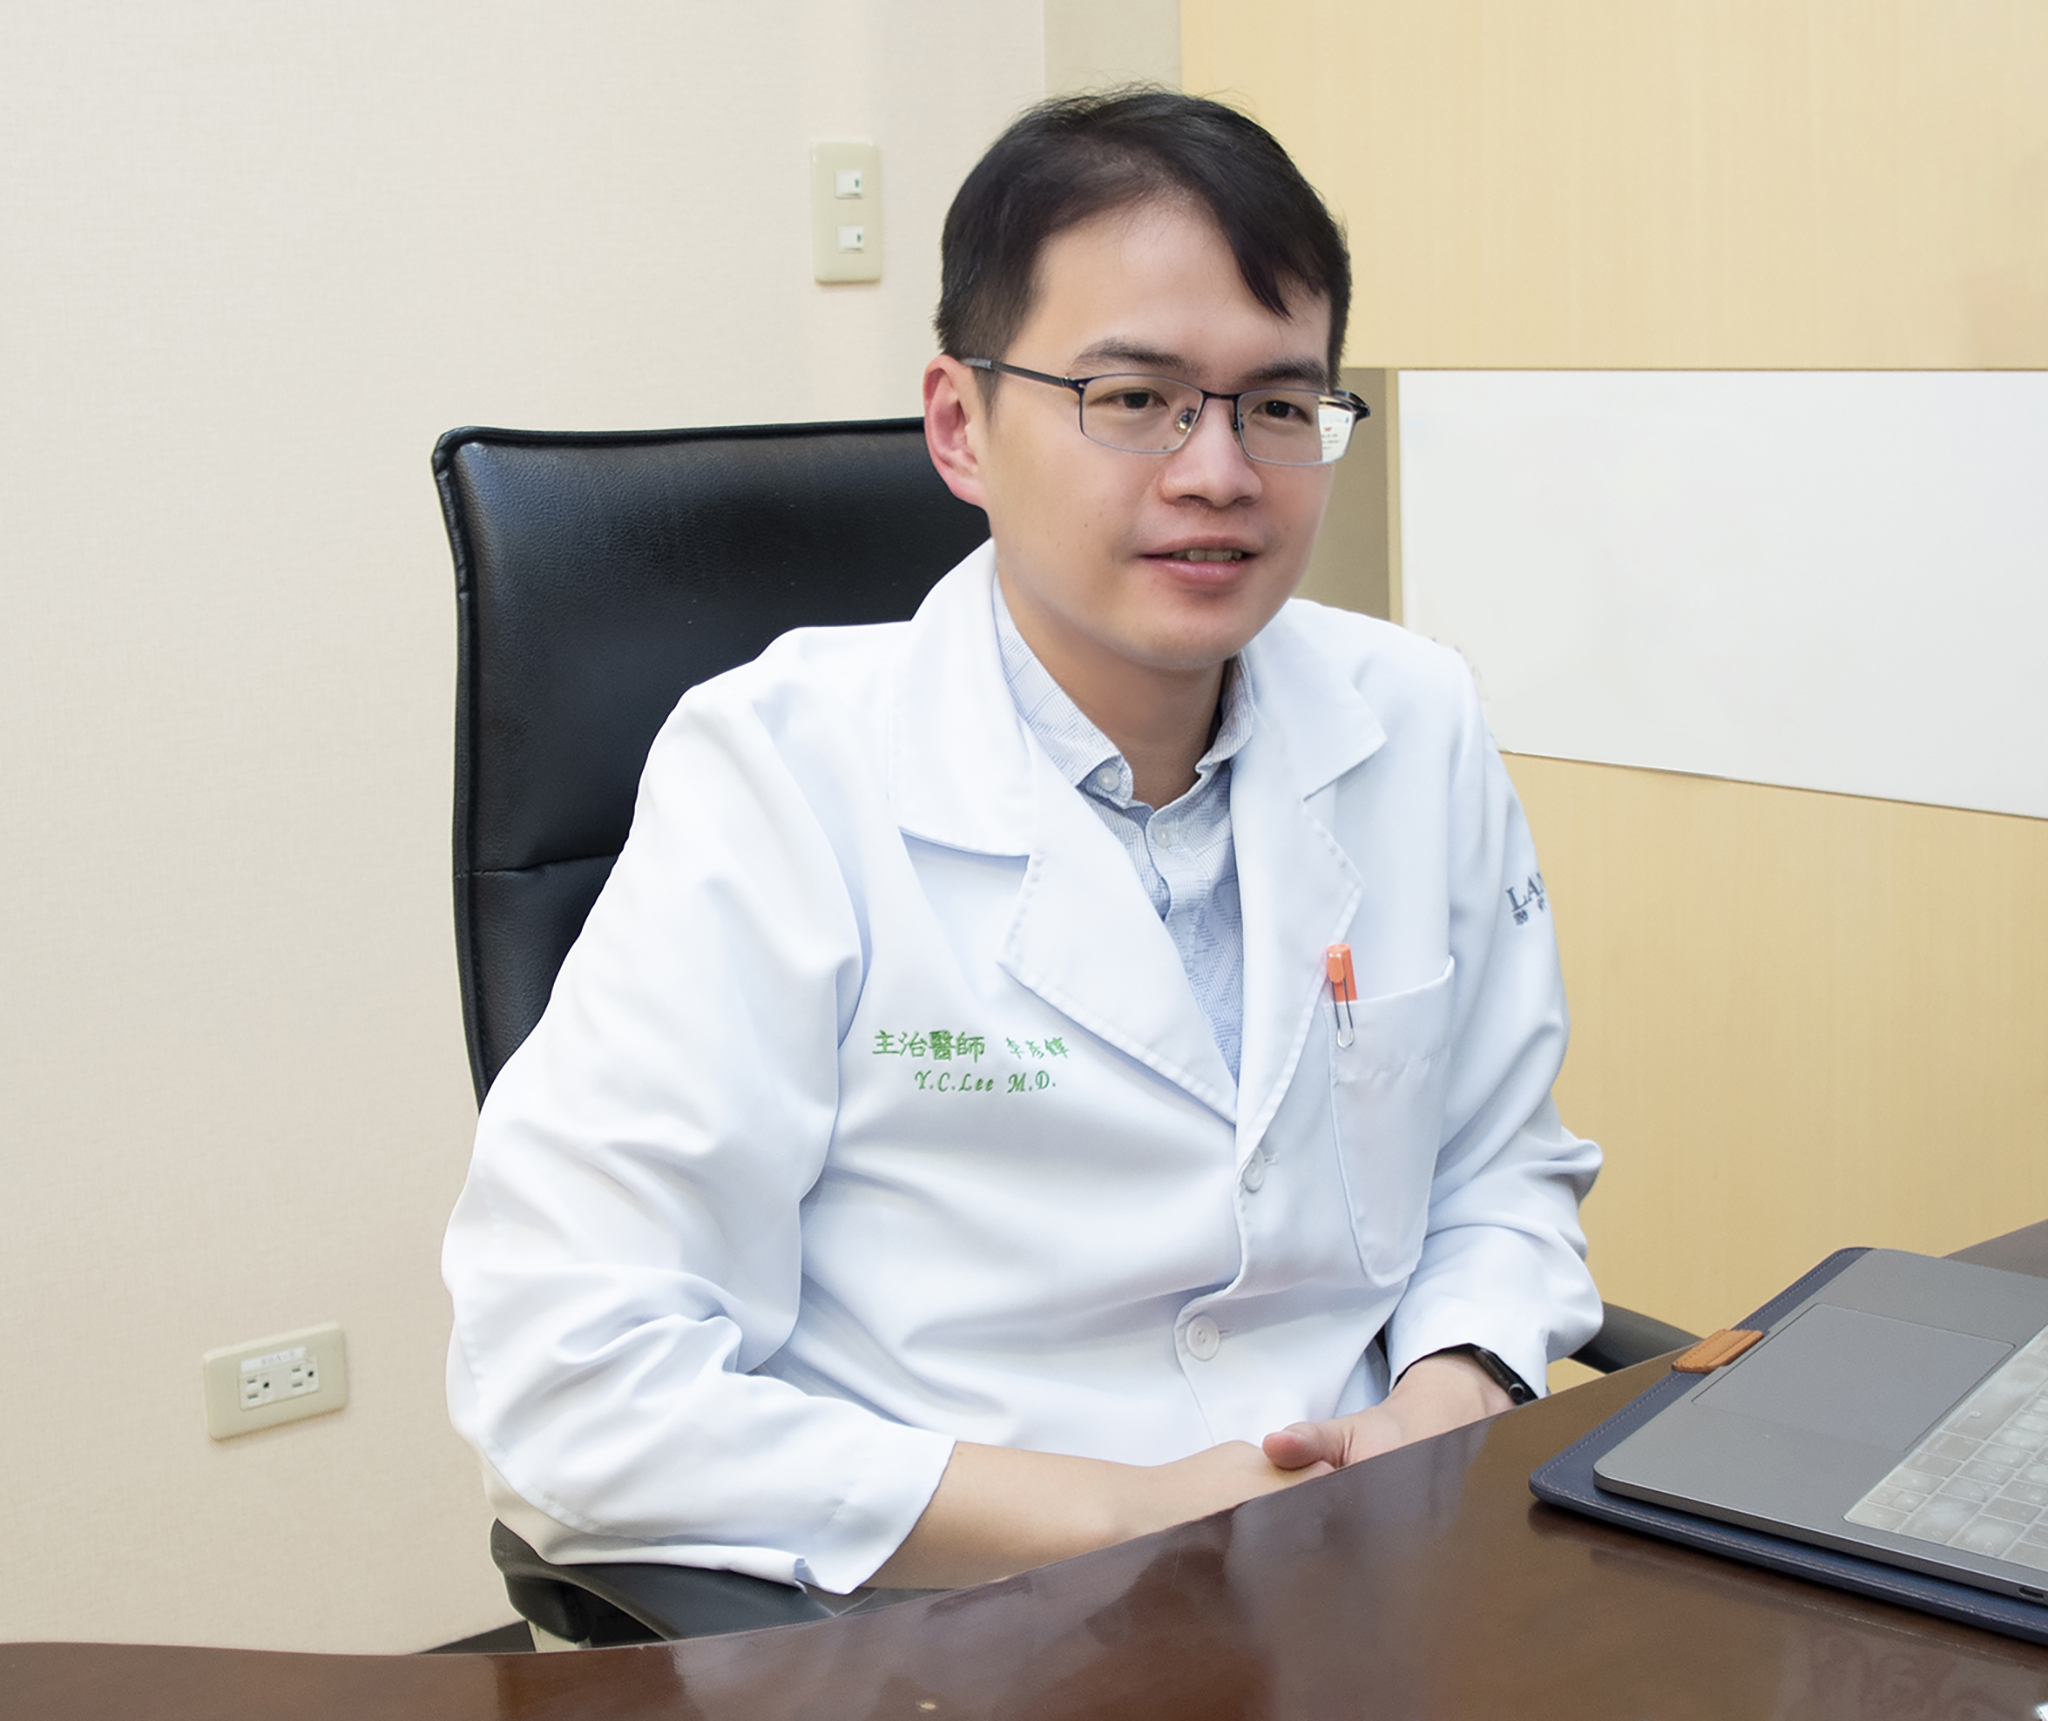 聯新國際醫院整形外科主治醫師李彥錞談「無痕內開眼袋手術」。